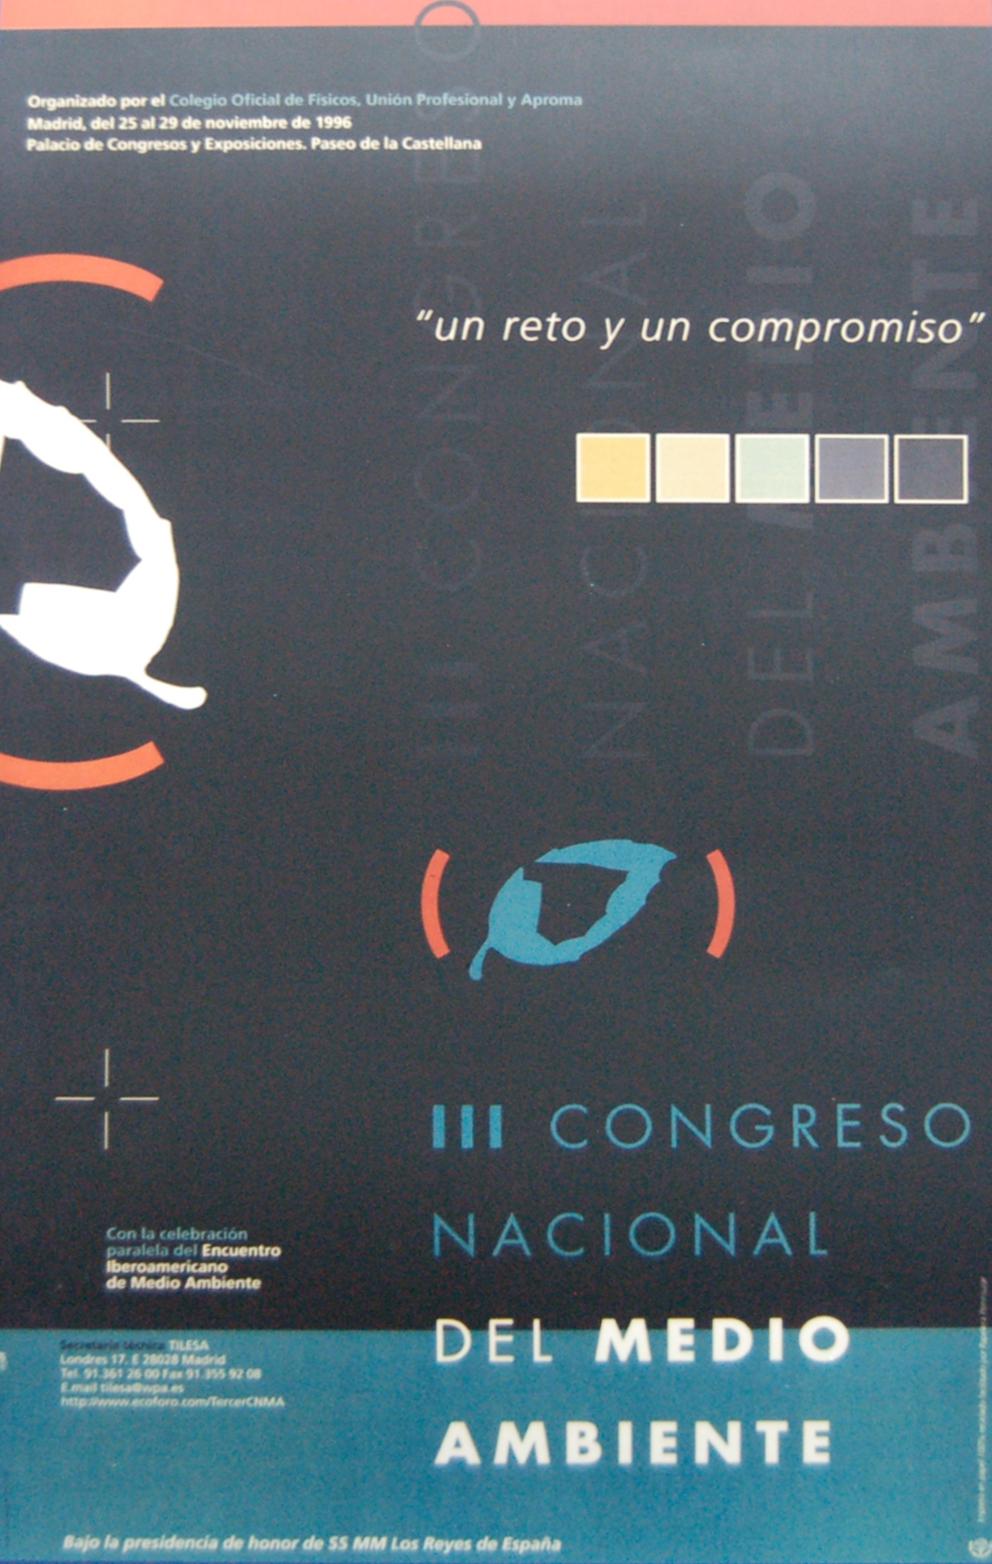 1996: III Congreso Nacional del Medio Ambiente